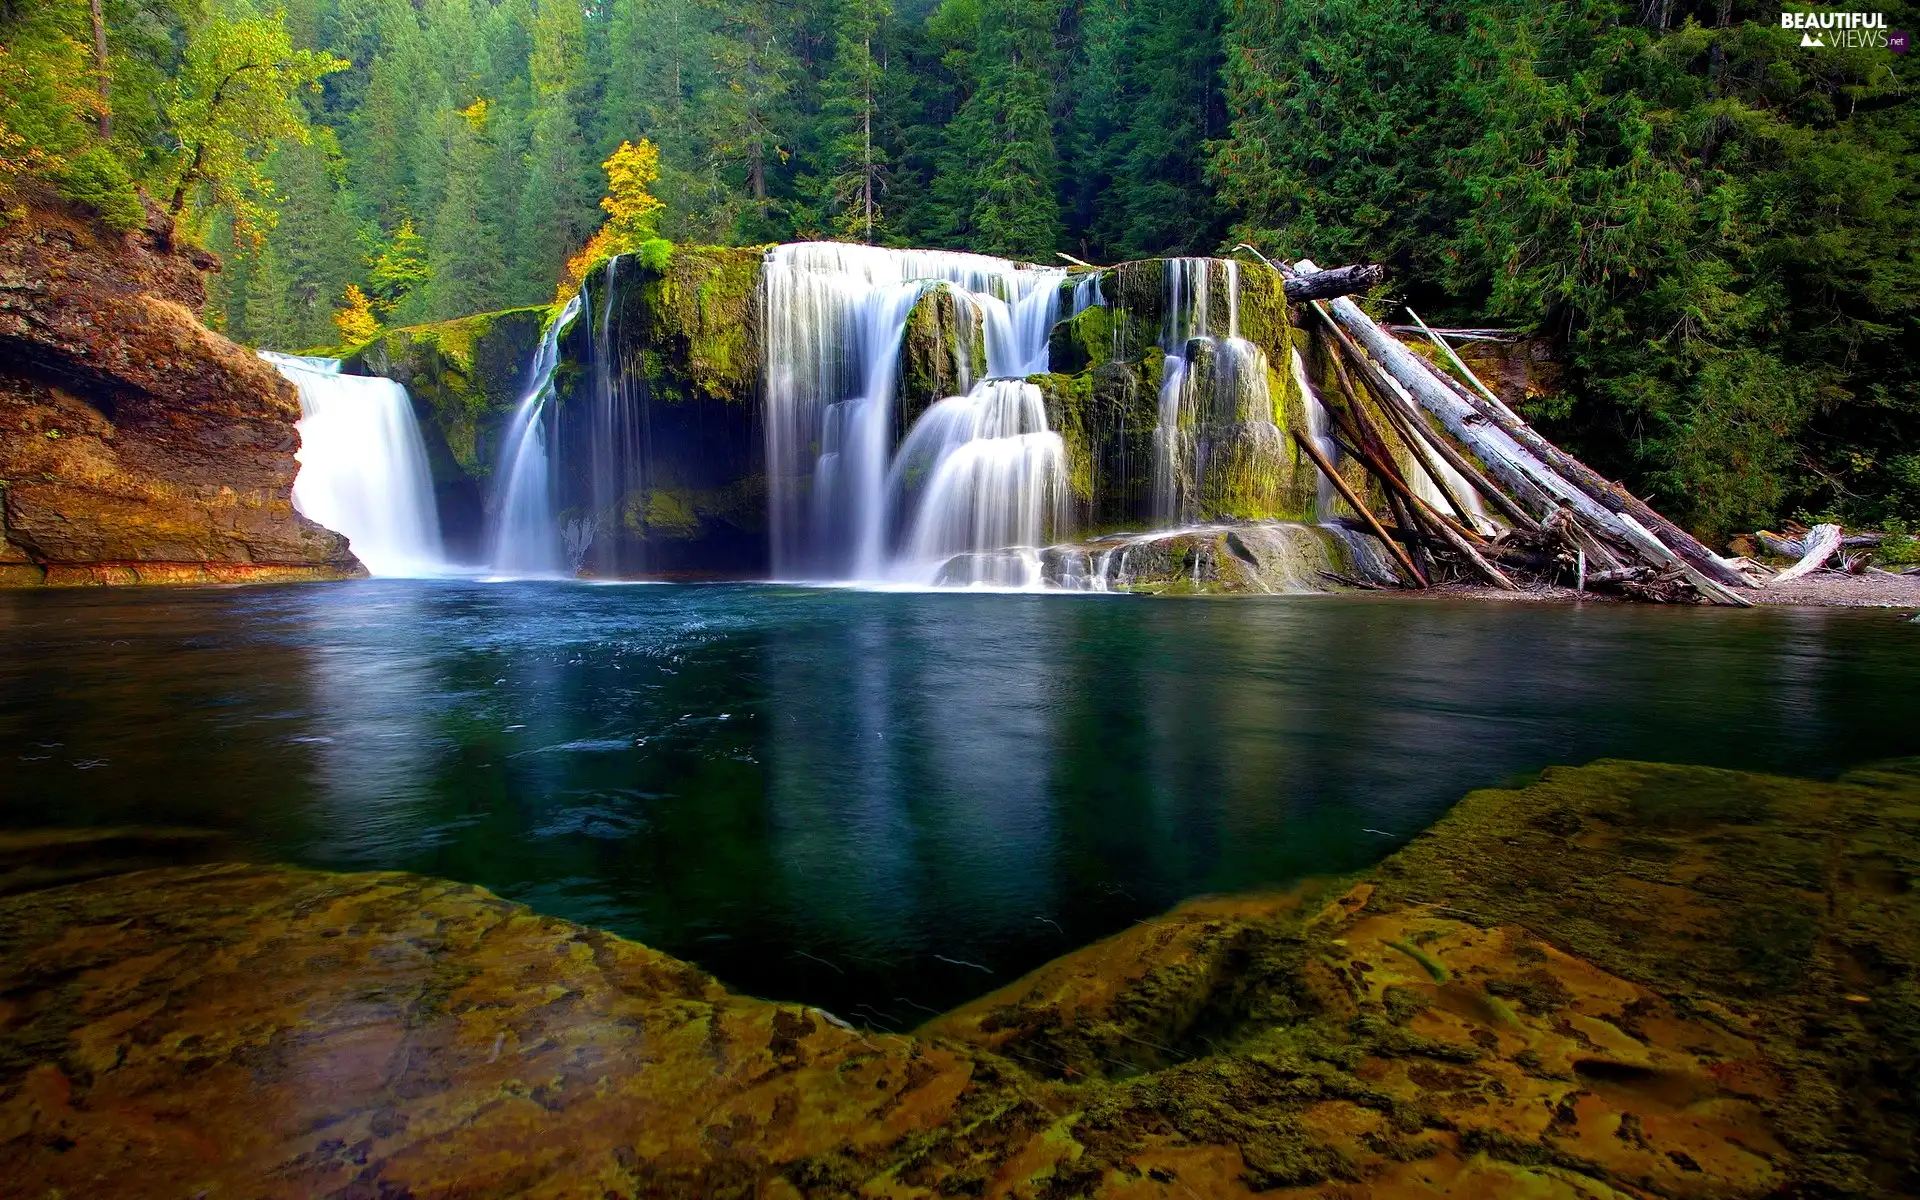 rocks, forest, waterfall